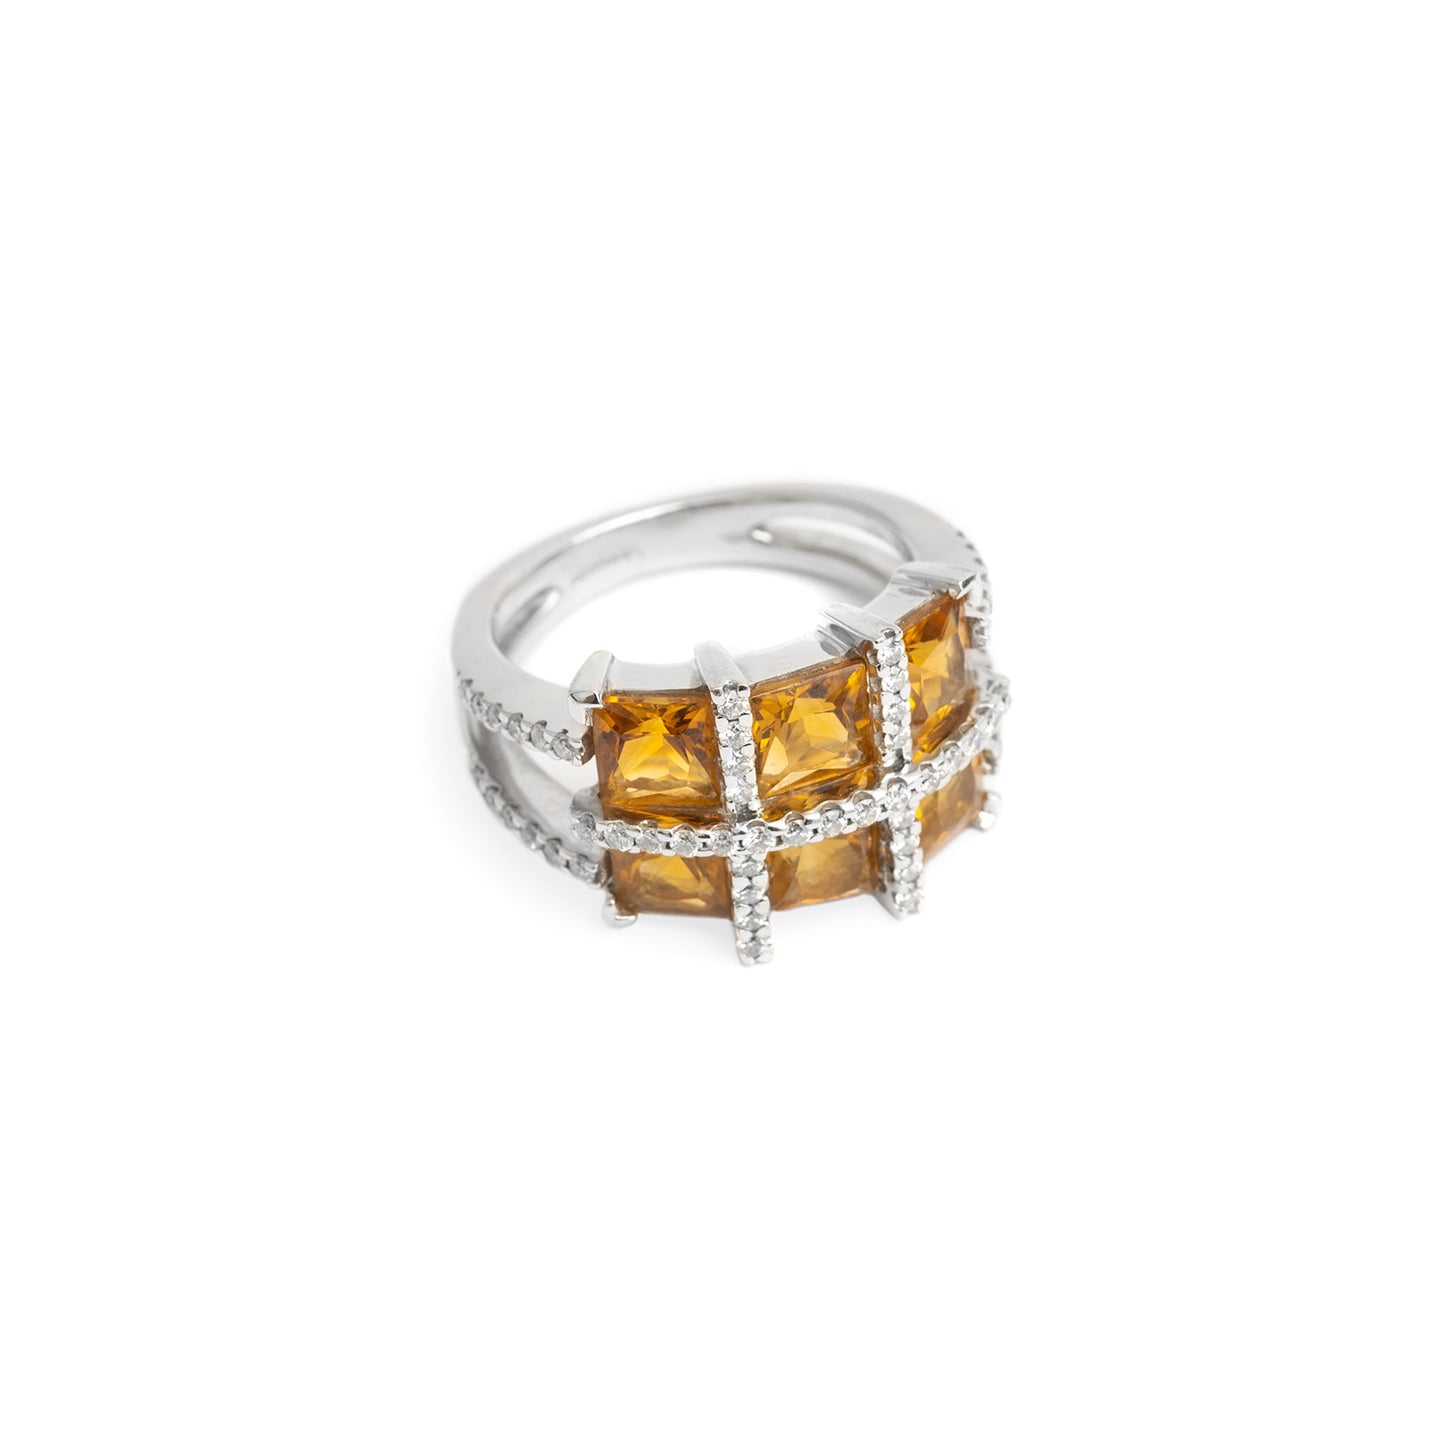 Fine 18ct White Gold Diamond & Square Cut Citrine Ring Size M (Code A351)